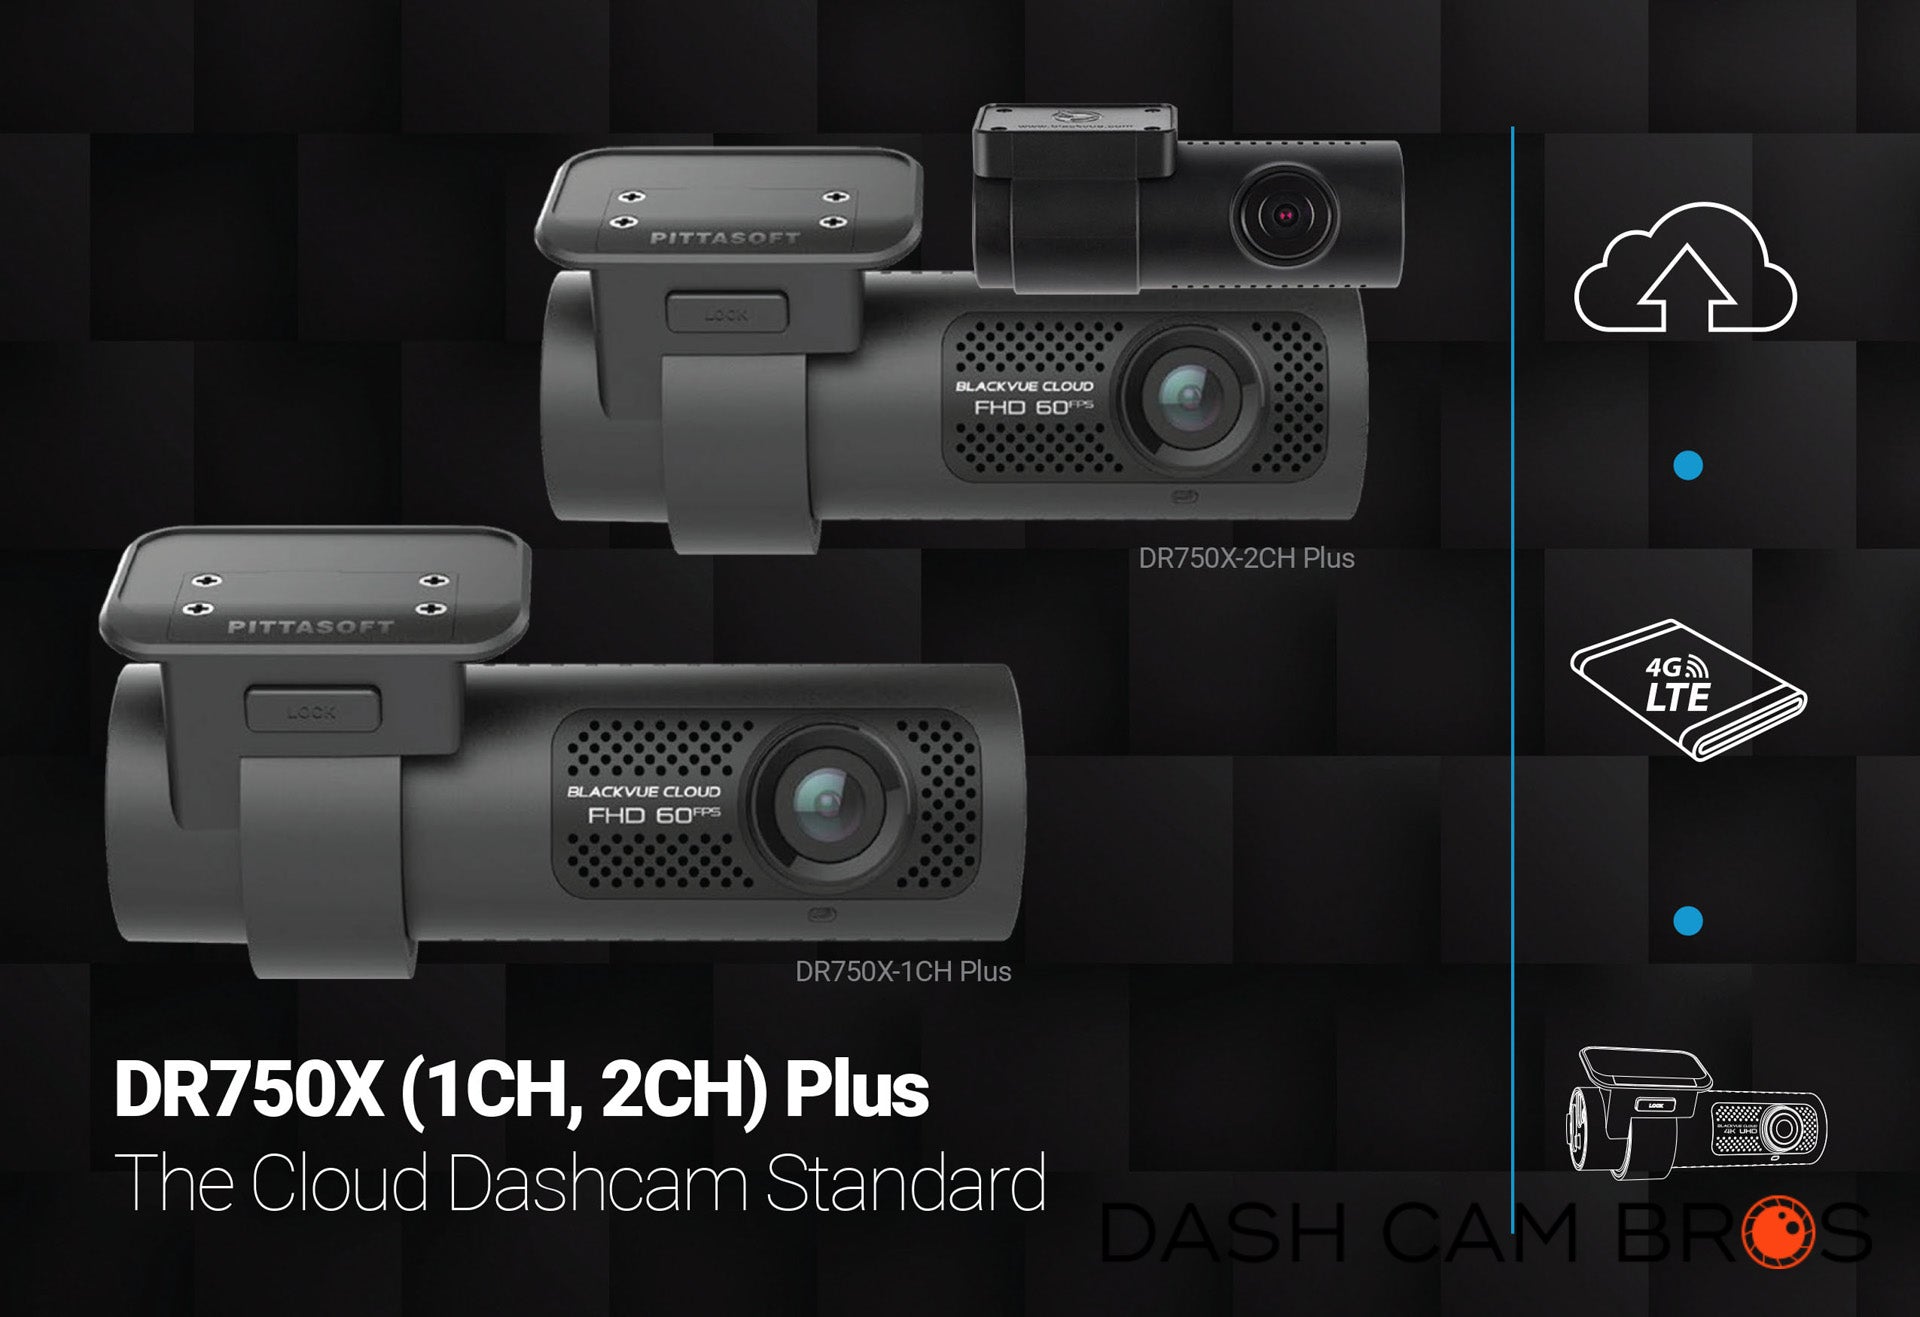 BlackVue DR750S-2CH-Truck Dual Lens Dashcam